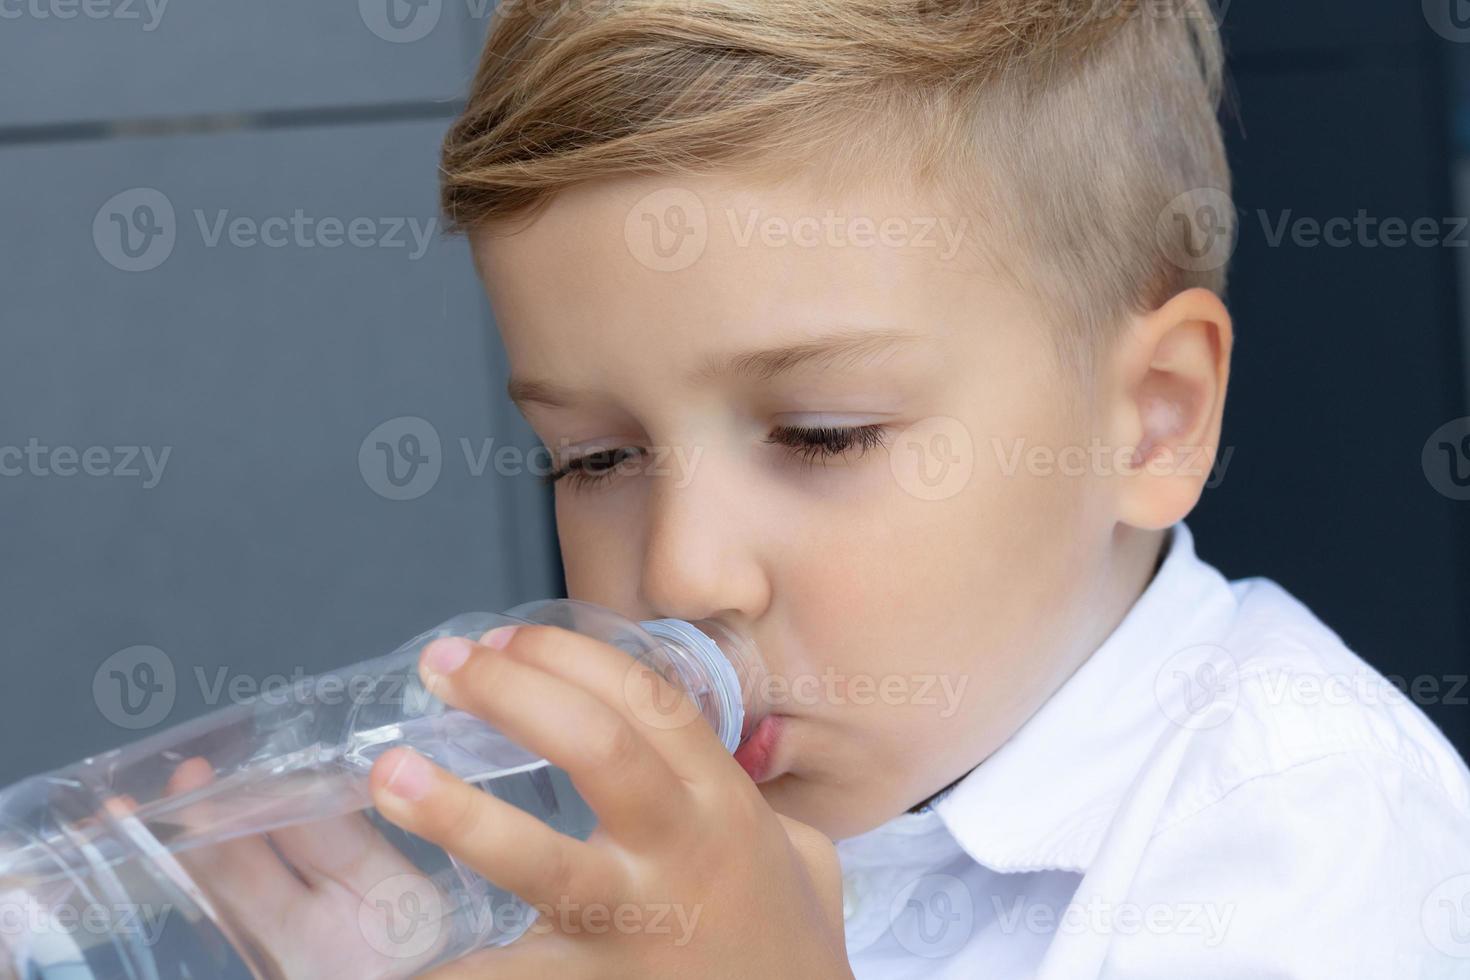 chico lindo bebiendo agua de una botella. foto